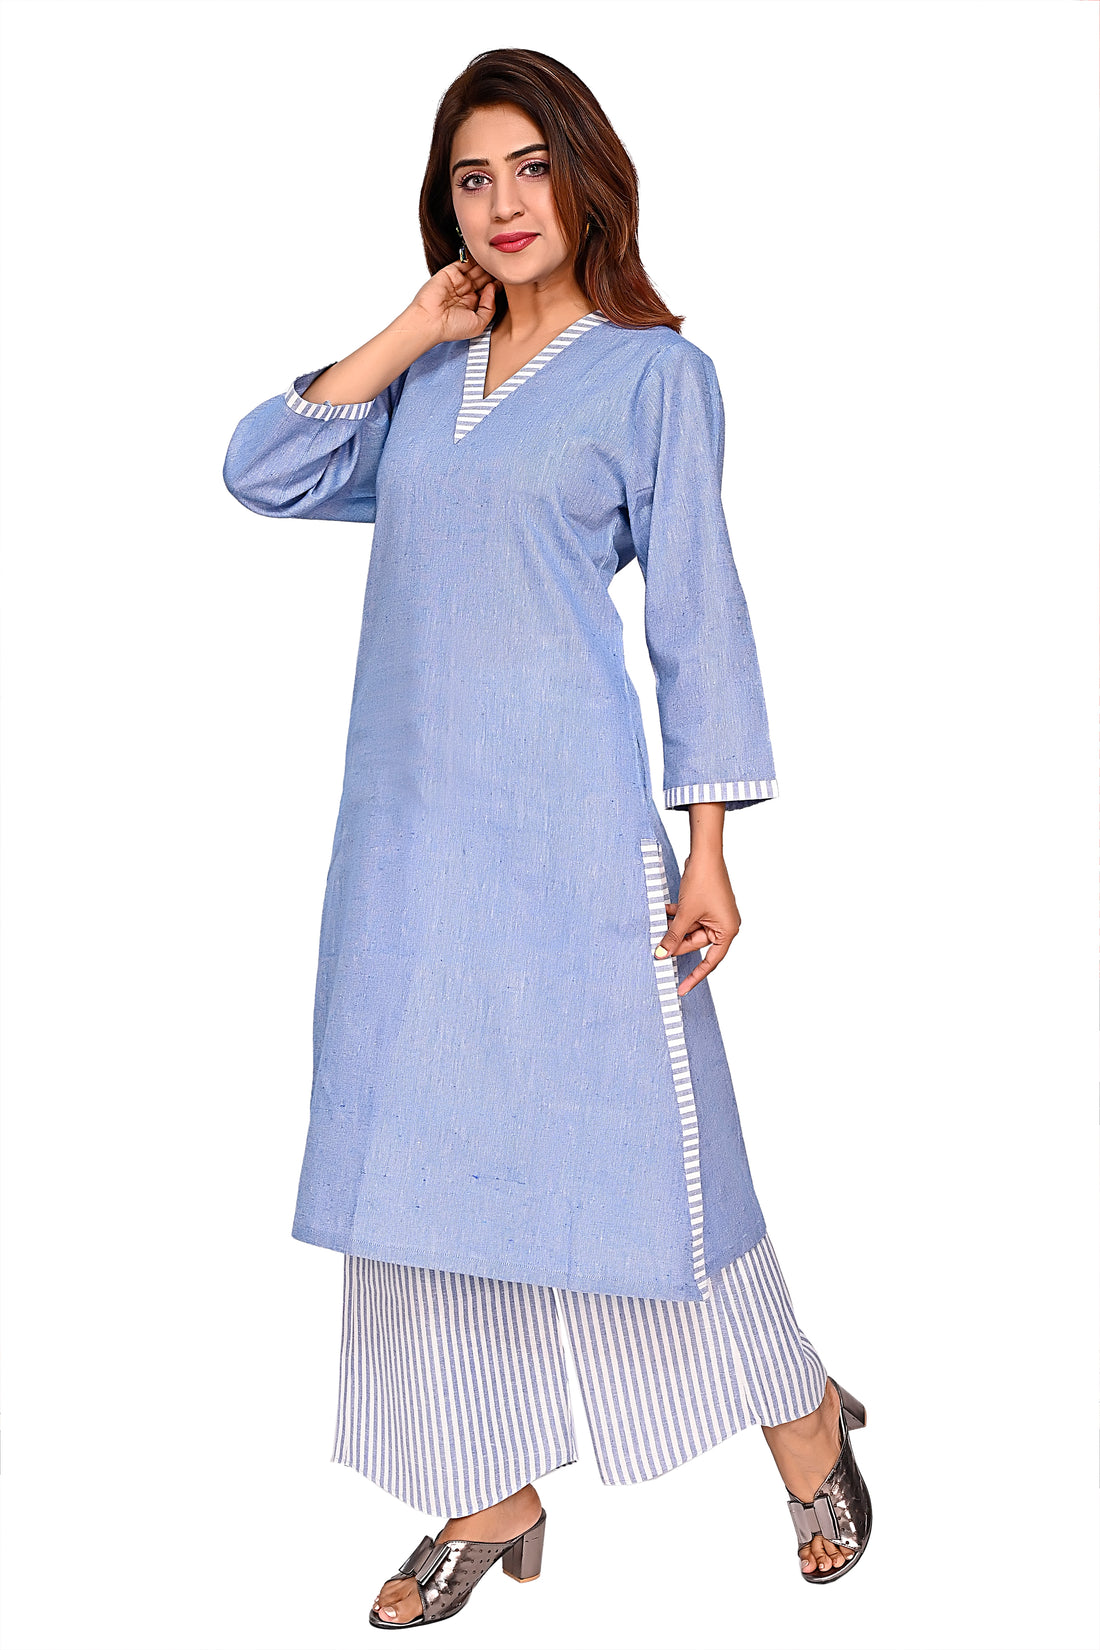 Nirmal online Premium cotton coord set kurti for Women in Blue colour